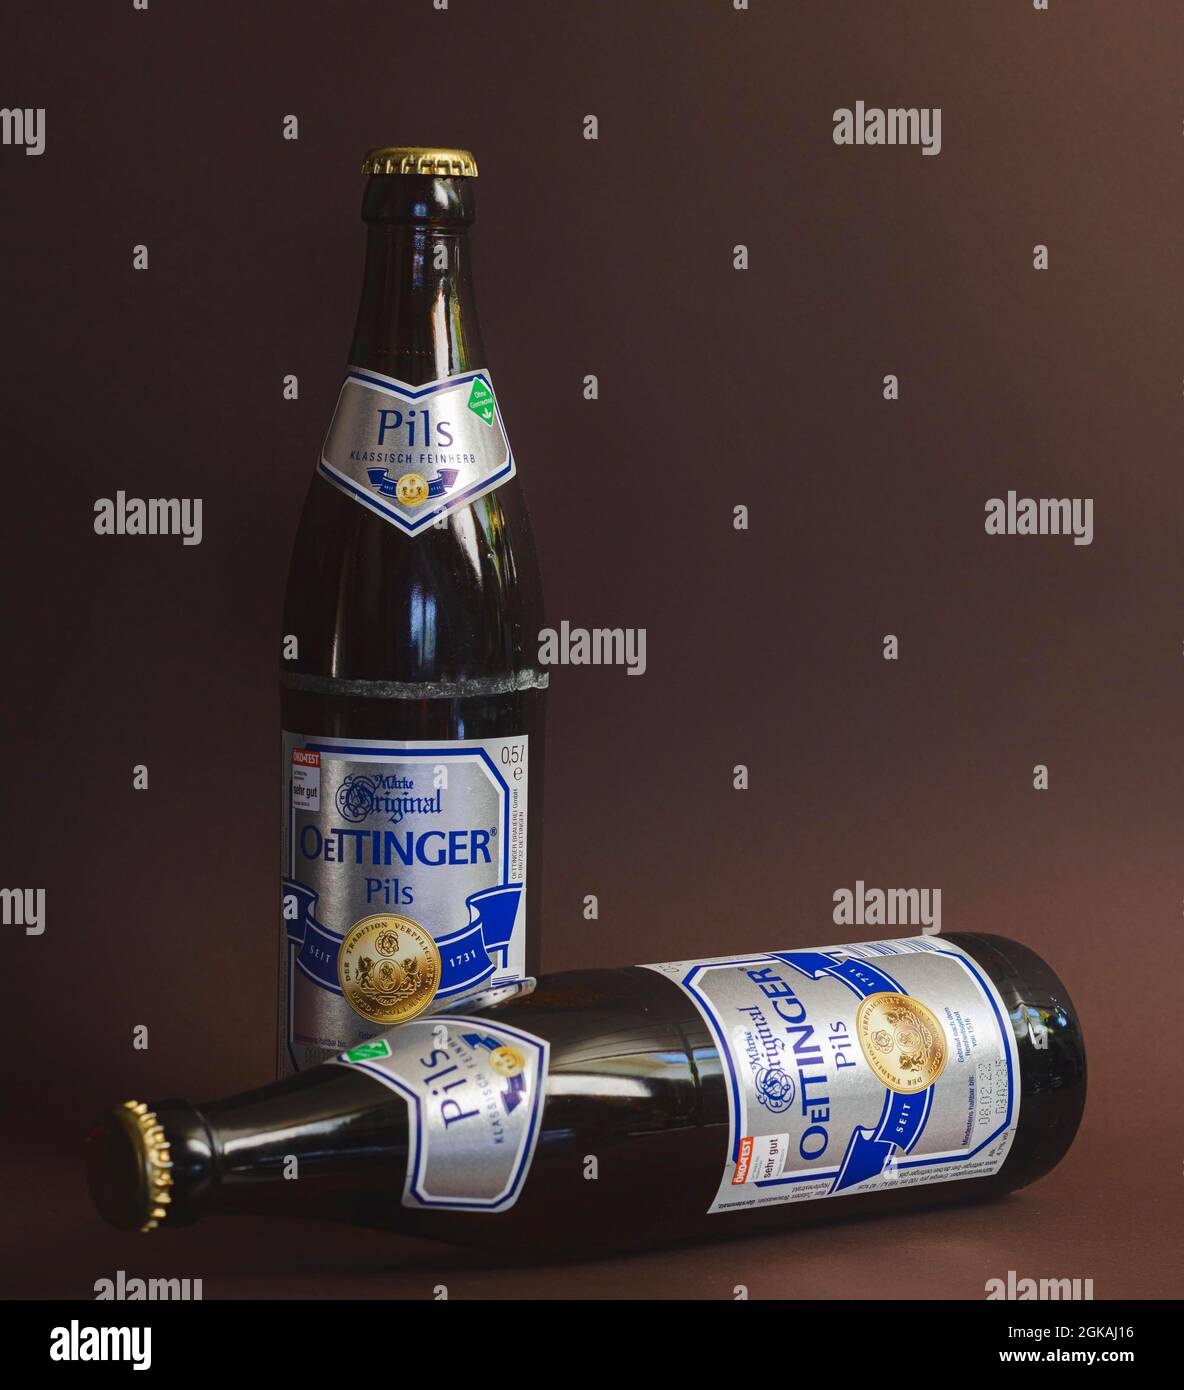 Neckargemuend, Deutschland - 13. September 2021: Zwei Flaschen Pilsner-Bier  der marke oettinger, Bestseller der deutschen Brauereigruppe  Stockfotografie - Alamy